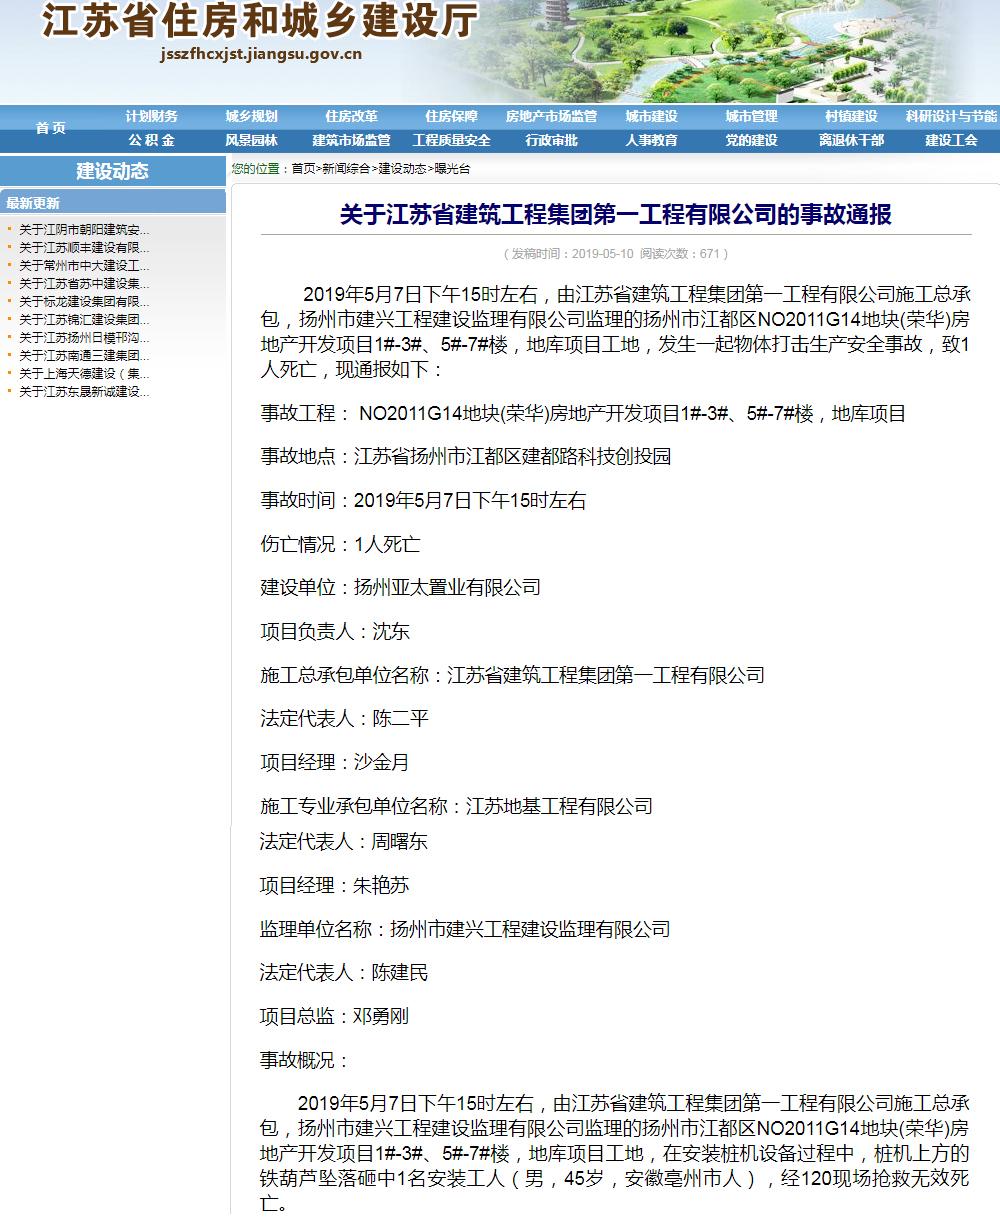 江苏省建筑工程集团有限公司安全事故频发为哪般